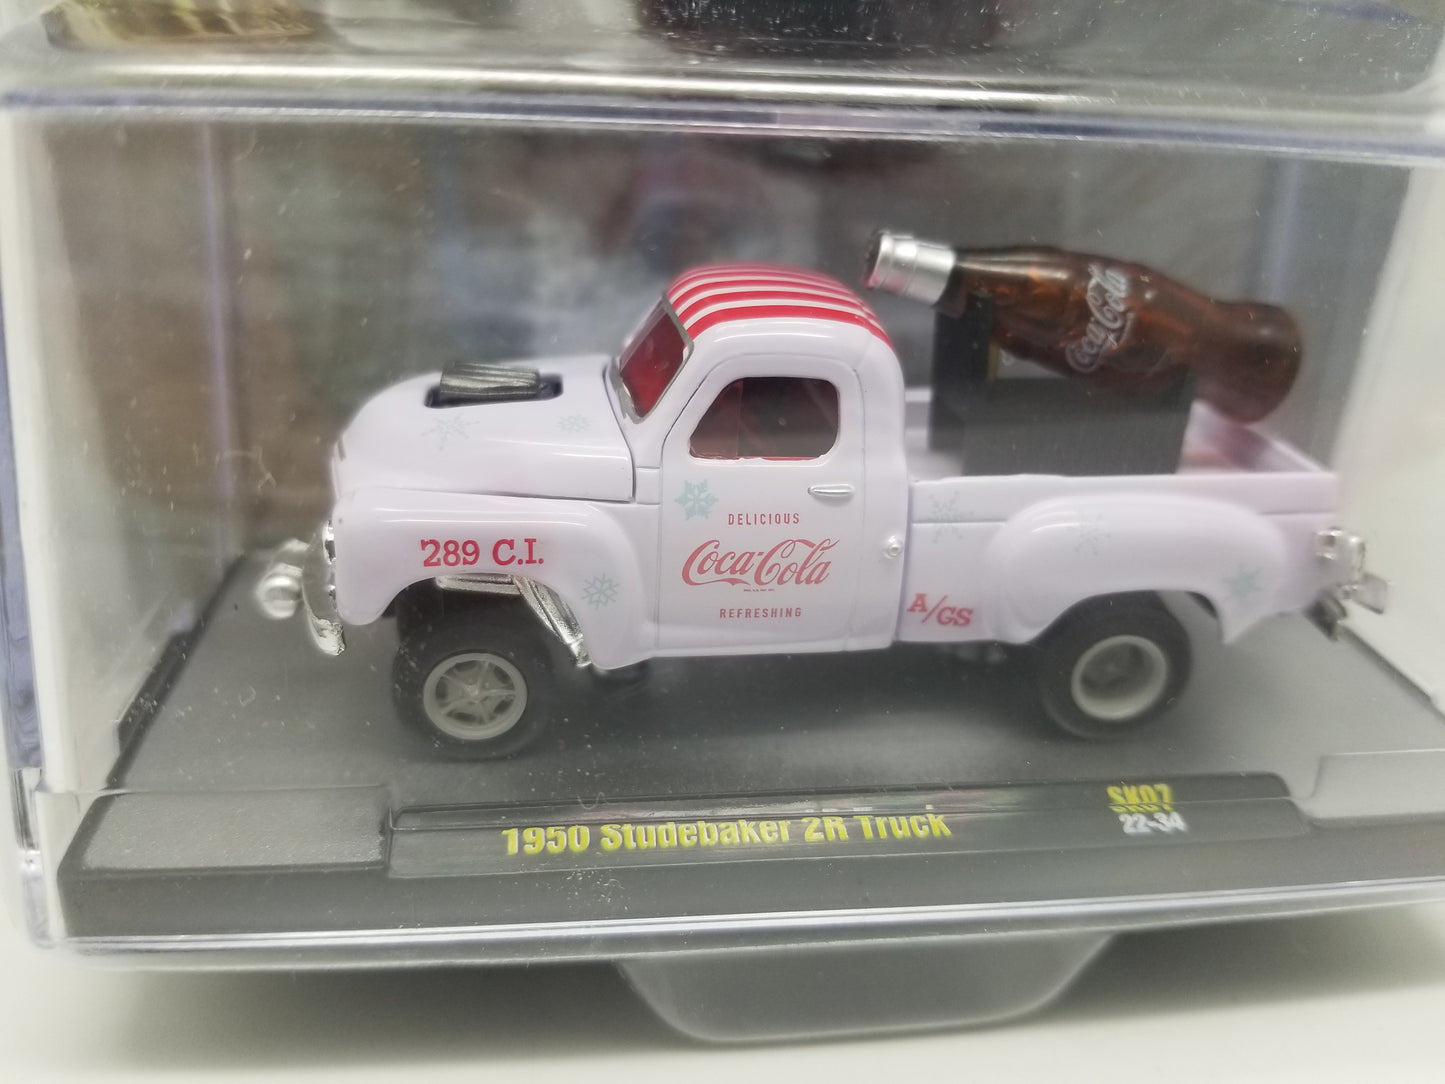 M2 1950 Studebaker 2R Truck - Coca-Cola